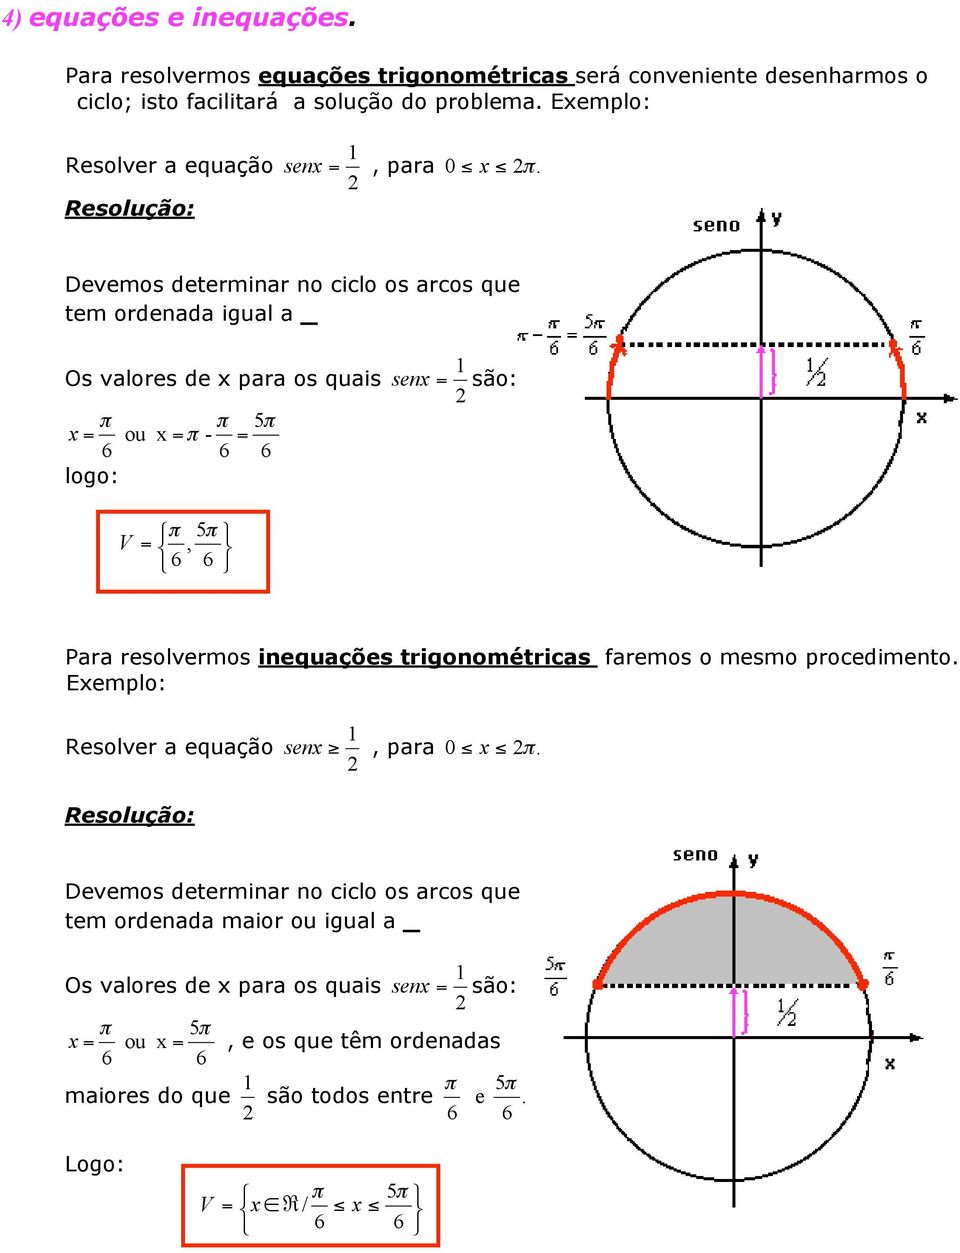 Ó 6 6 Para resolvermos inequações trigonométricas faremos o mesmo rocedimento Exemlo: Resolver a equação senx, ara 0 x Devemos determinar no ciclo os arcos que tem